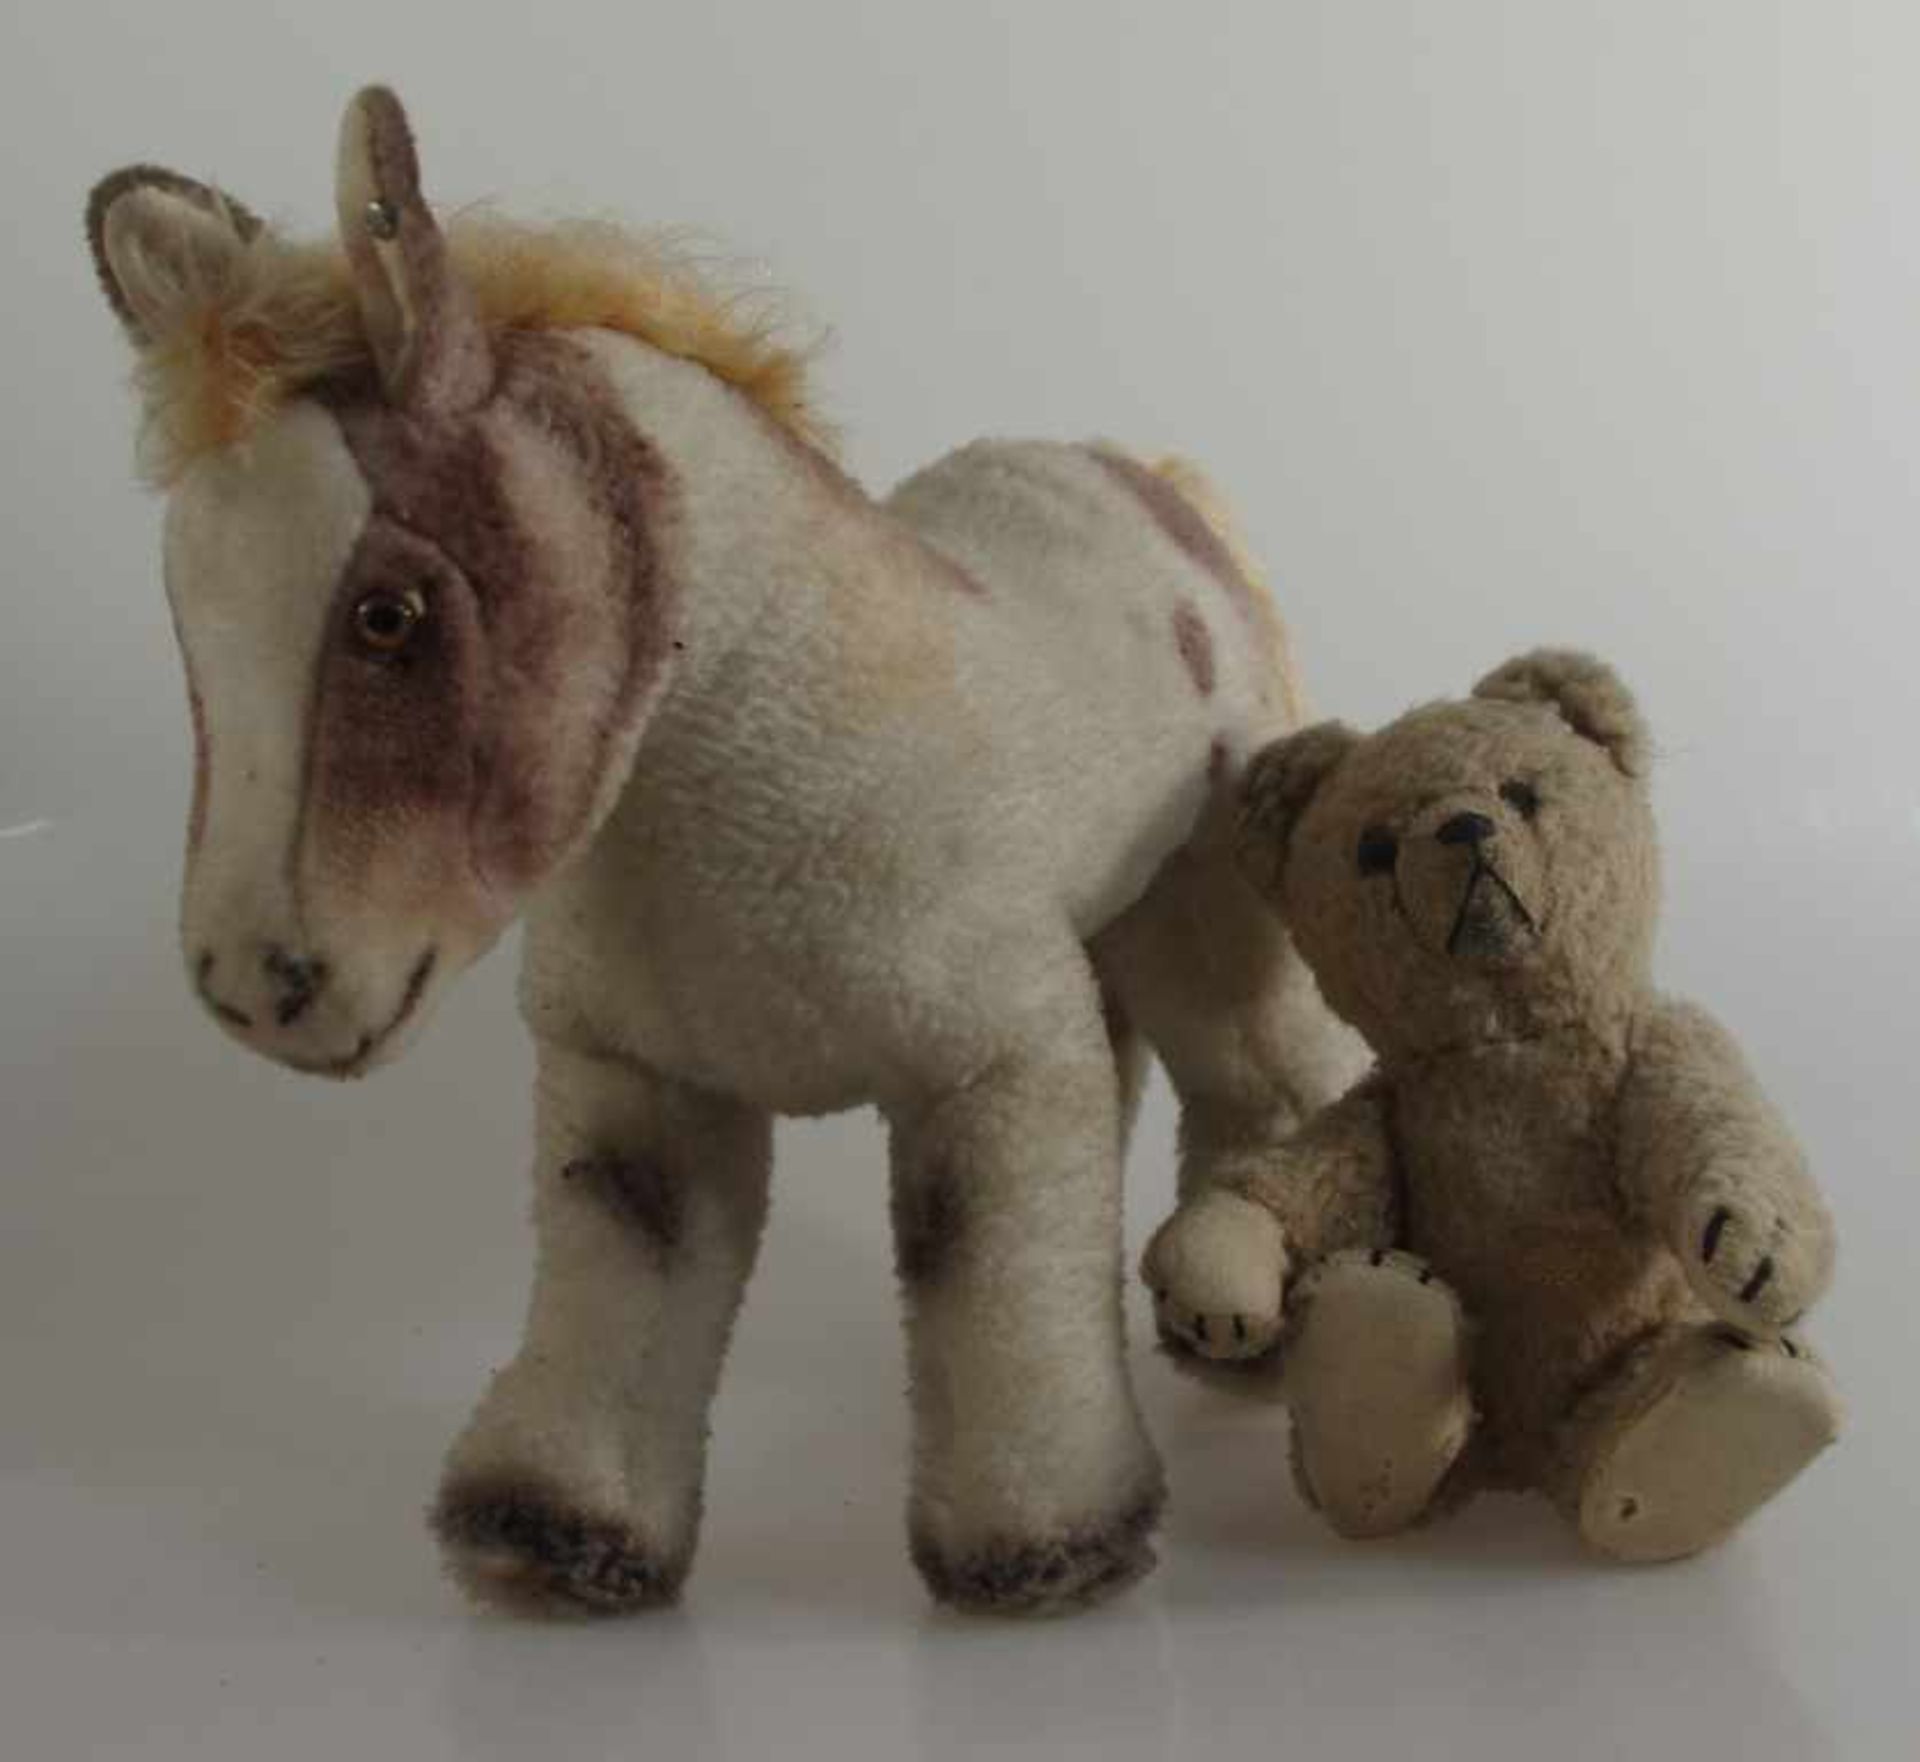 2 Stofftiere, Pferd Steiff und Teddybär, um 1950/60, Spielspuren